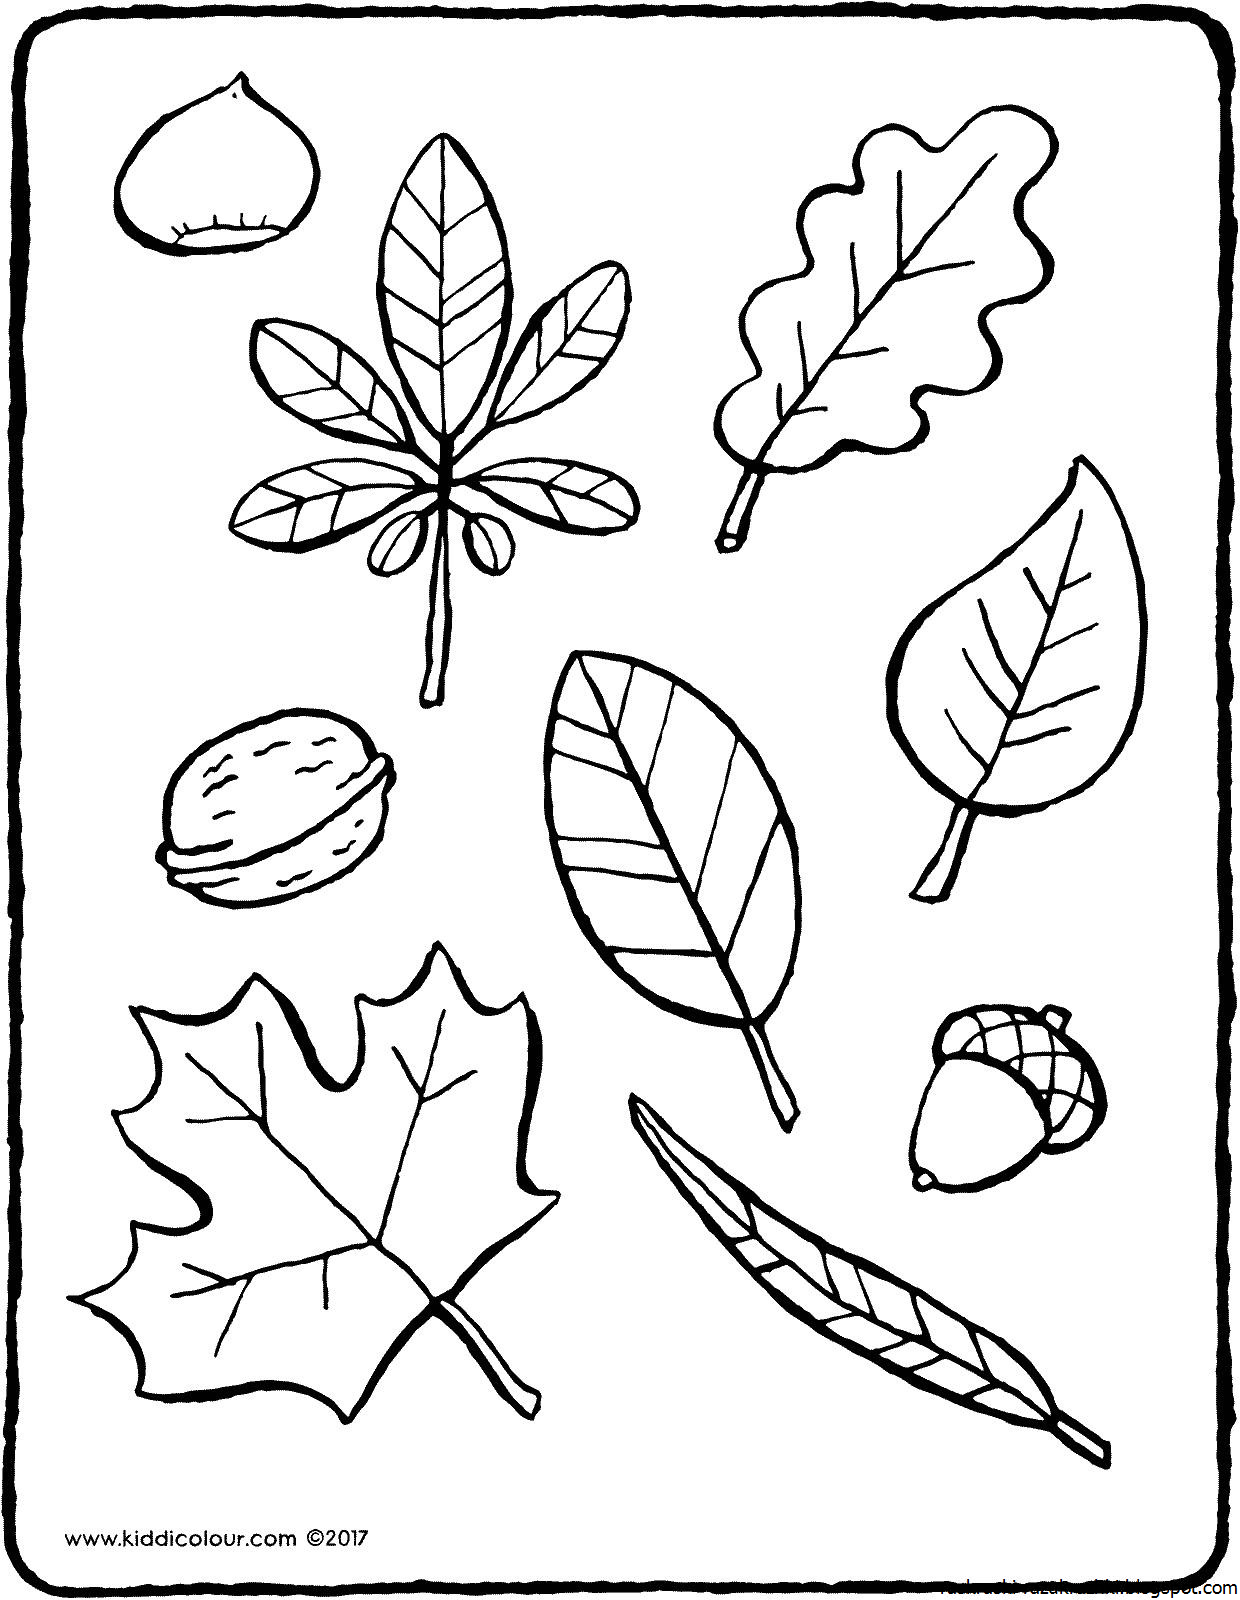 Раскрась листочки. Листья деревьев раскраска. Раскраска листья деревьев для детей. Дерево с листочками раскраска для детей. Раскраски для малышей листочки деревьев.